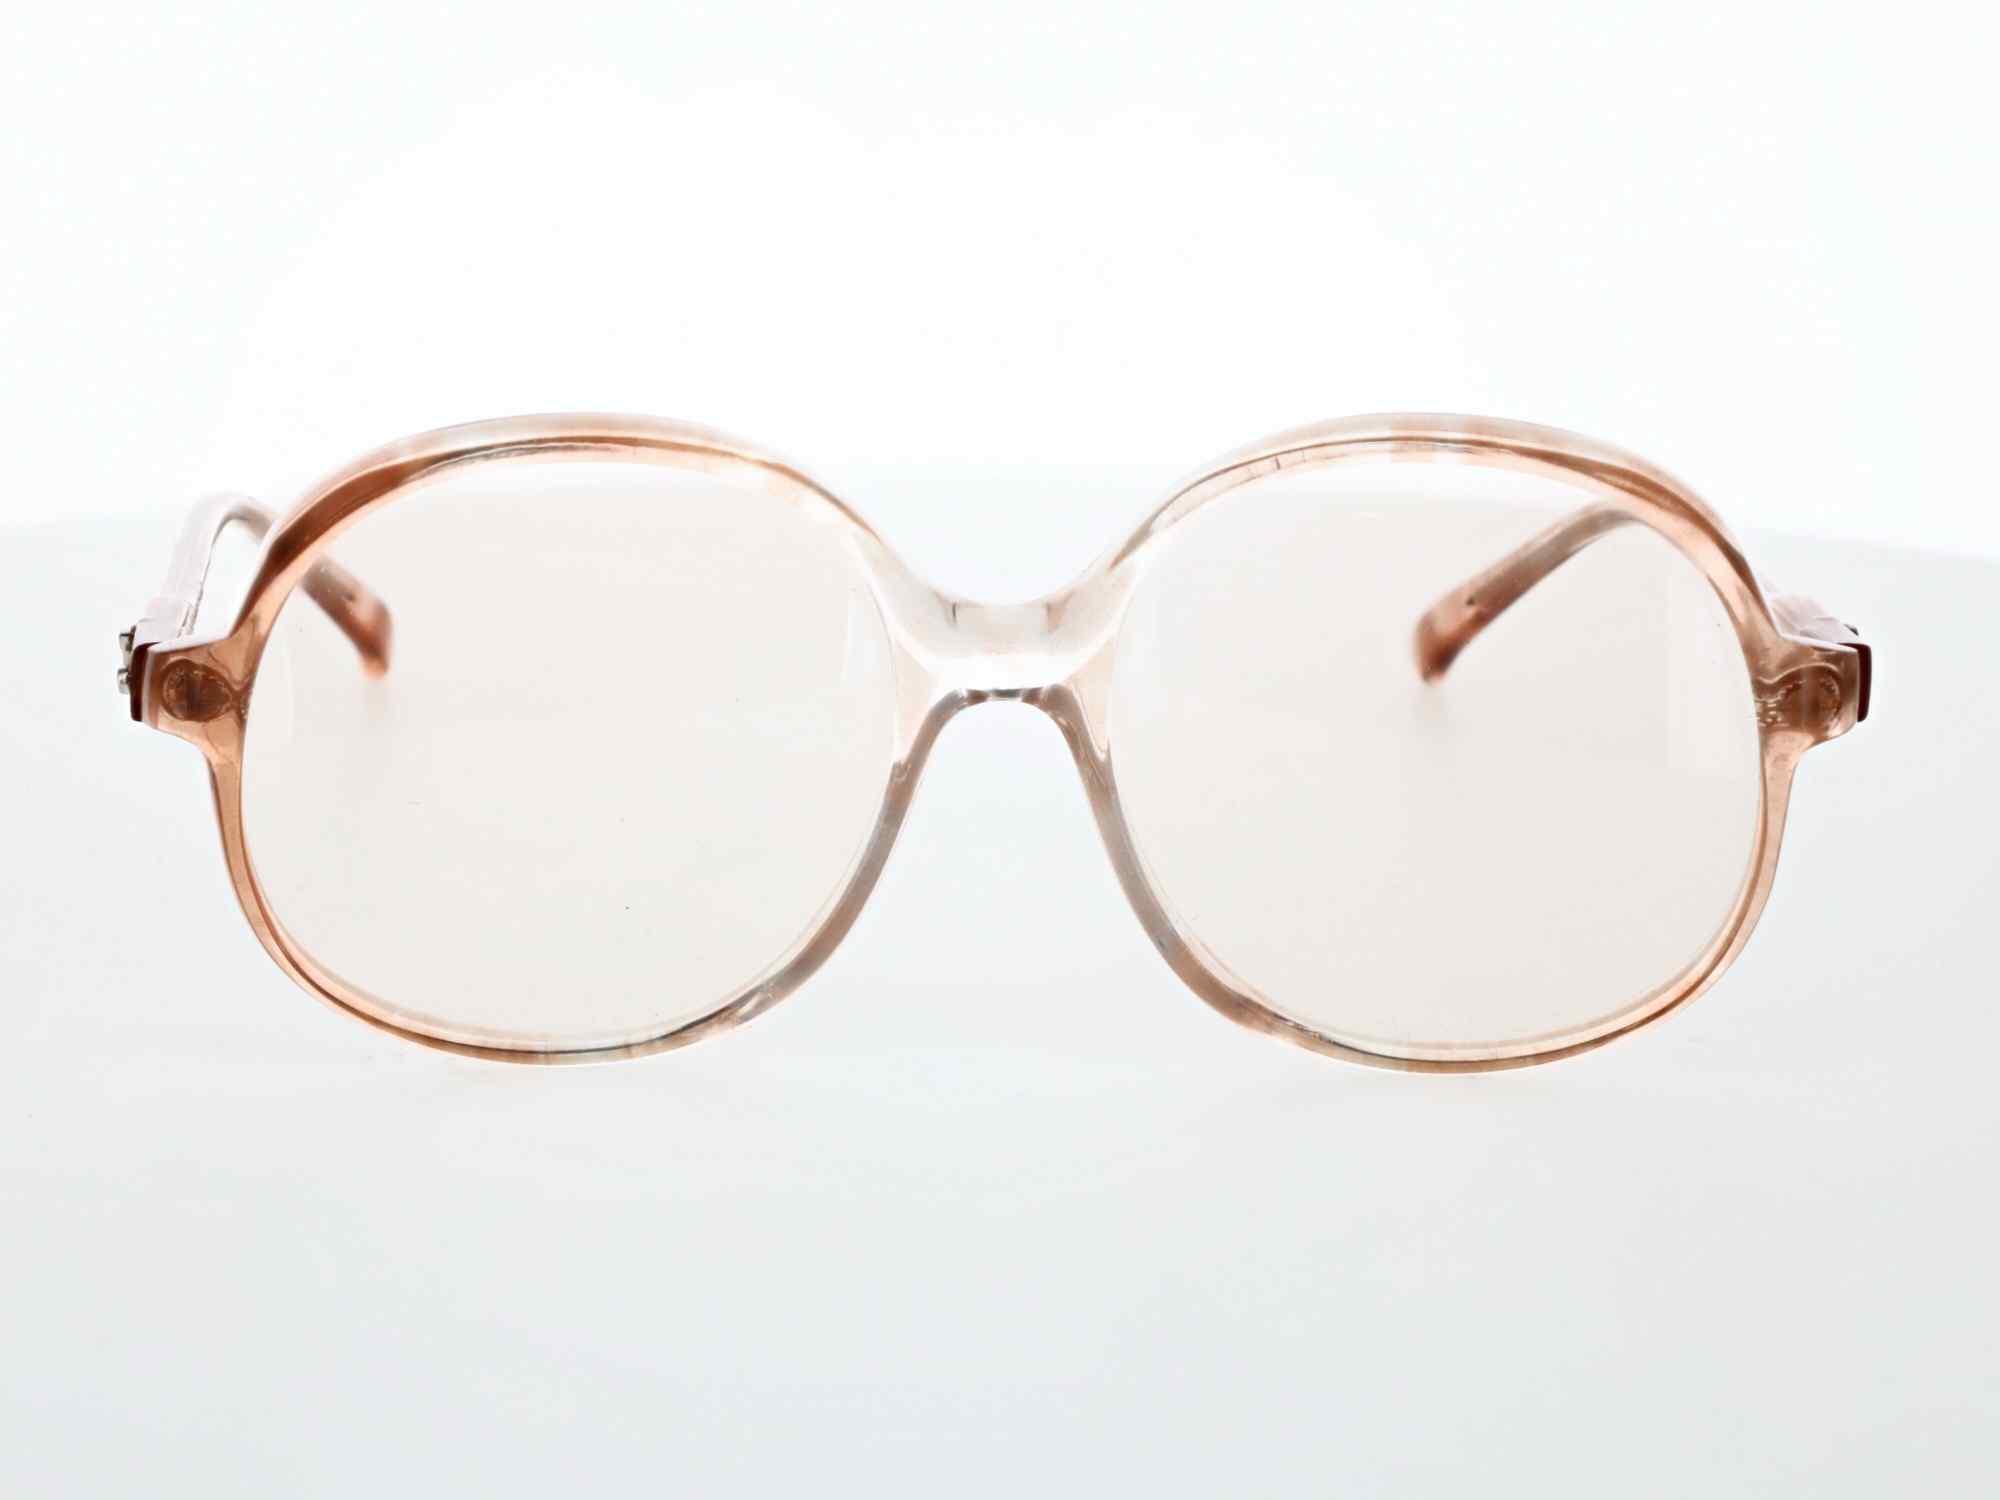 Franck Olivier Eyeglasses, 794 64 - Vision 770